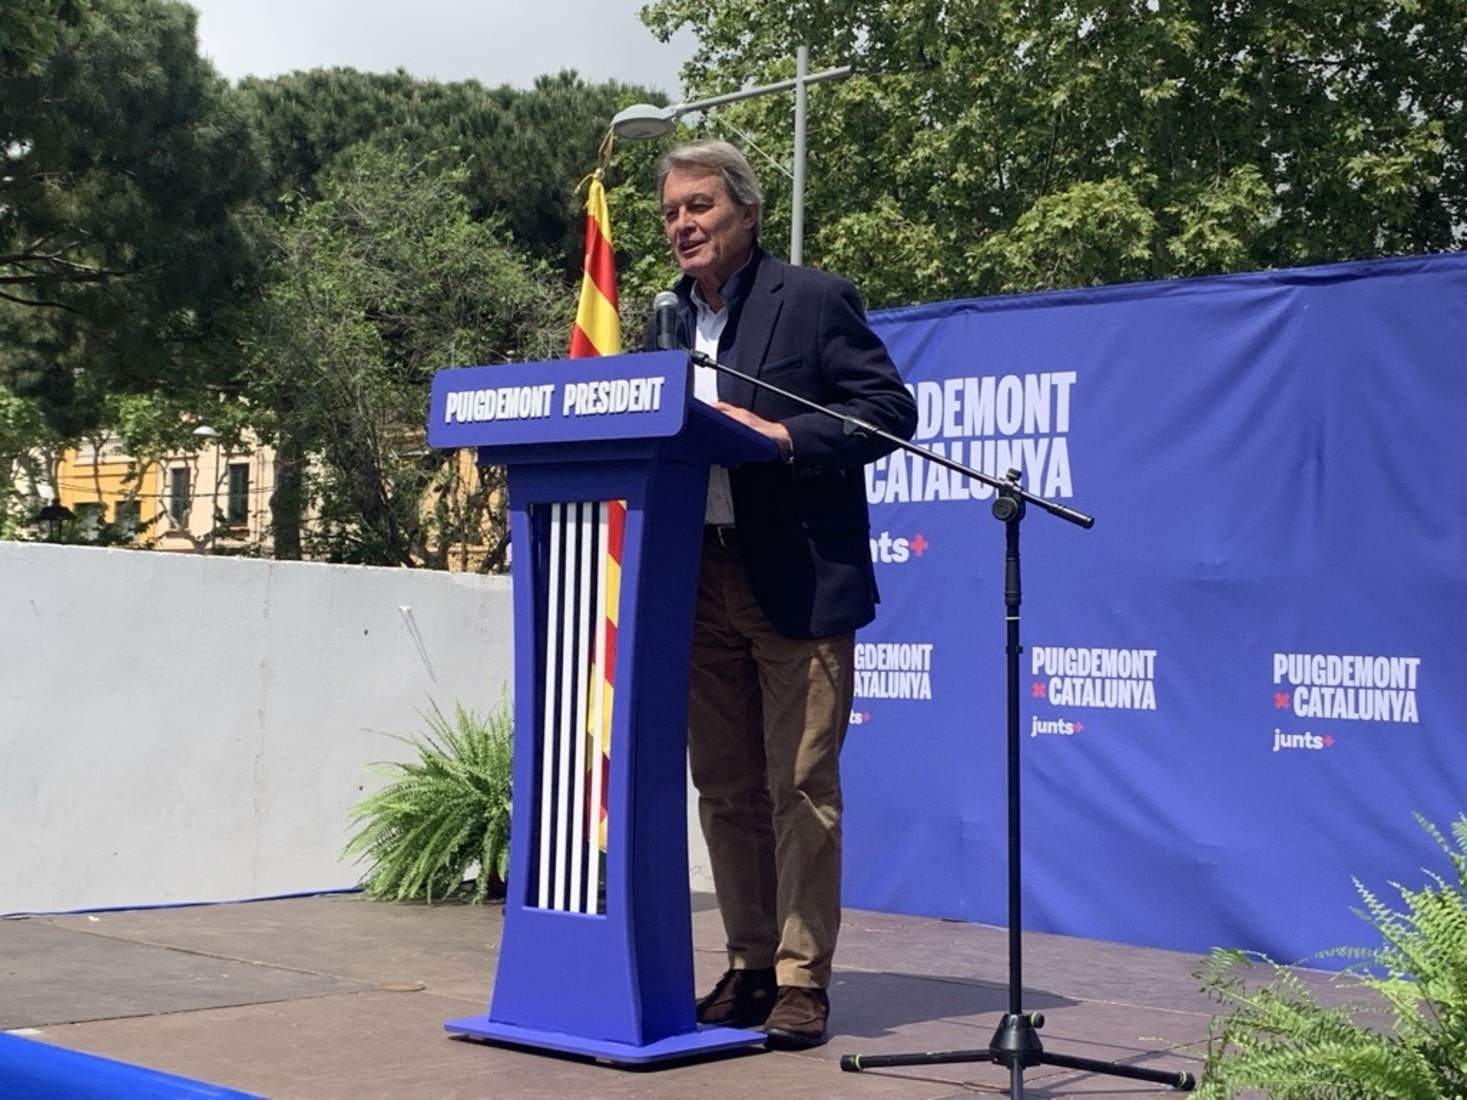 Artur Mas pide el voto para Puigdemont: "No quiero a un president dependiente ni otro tripartito"